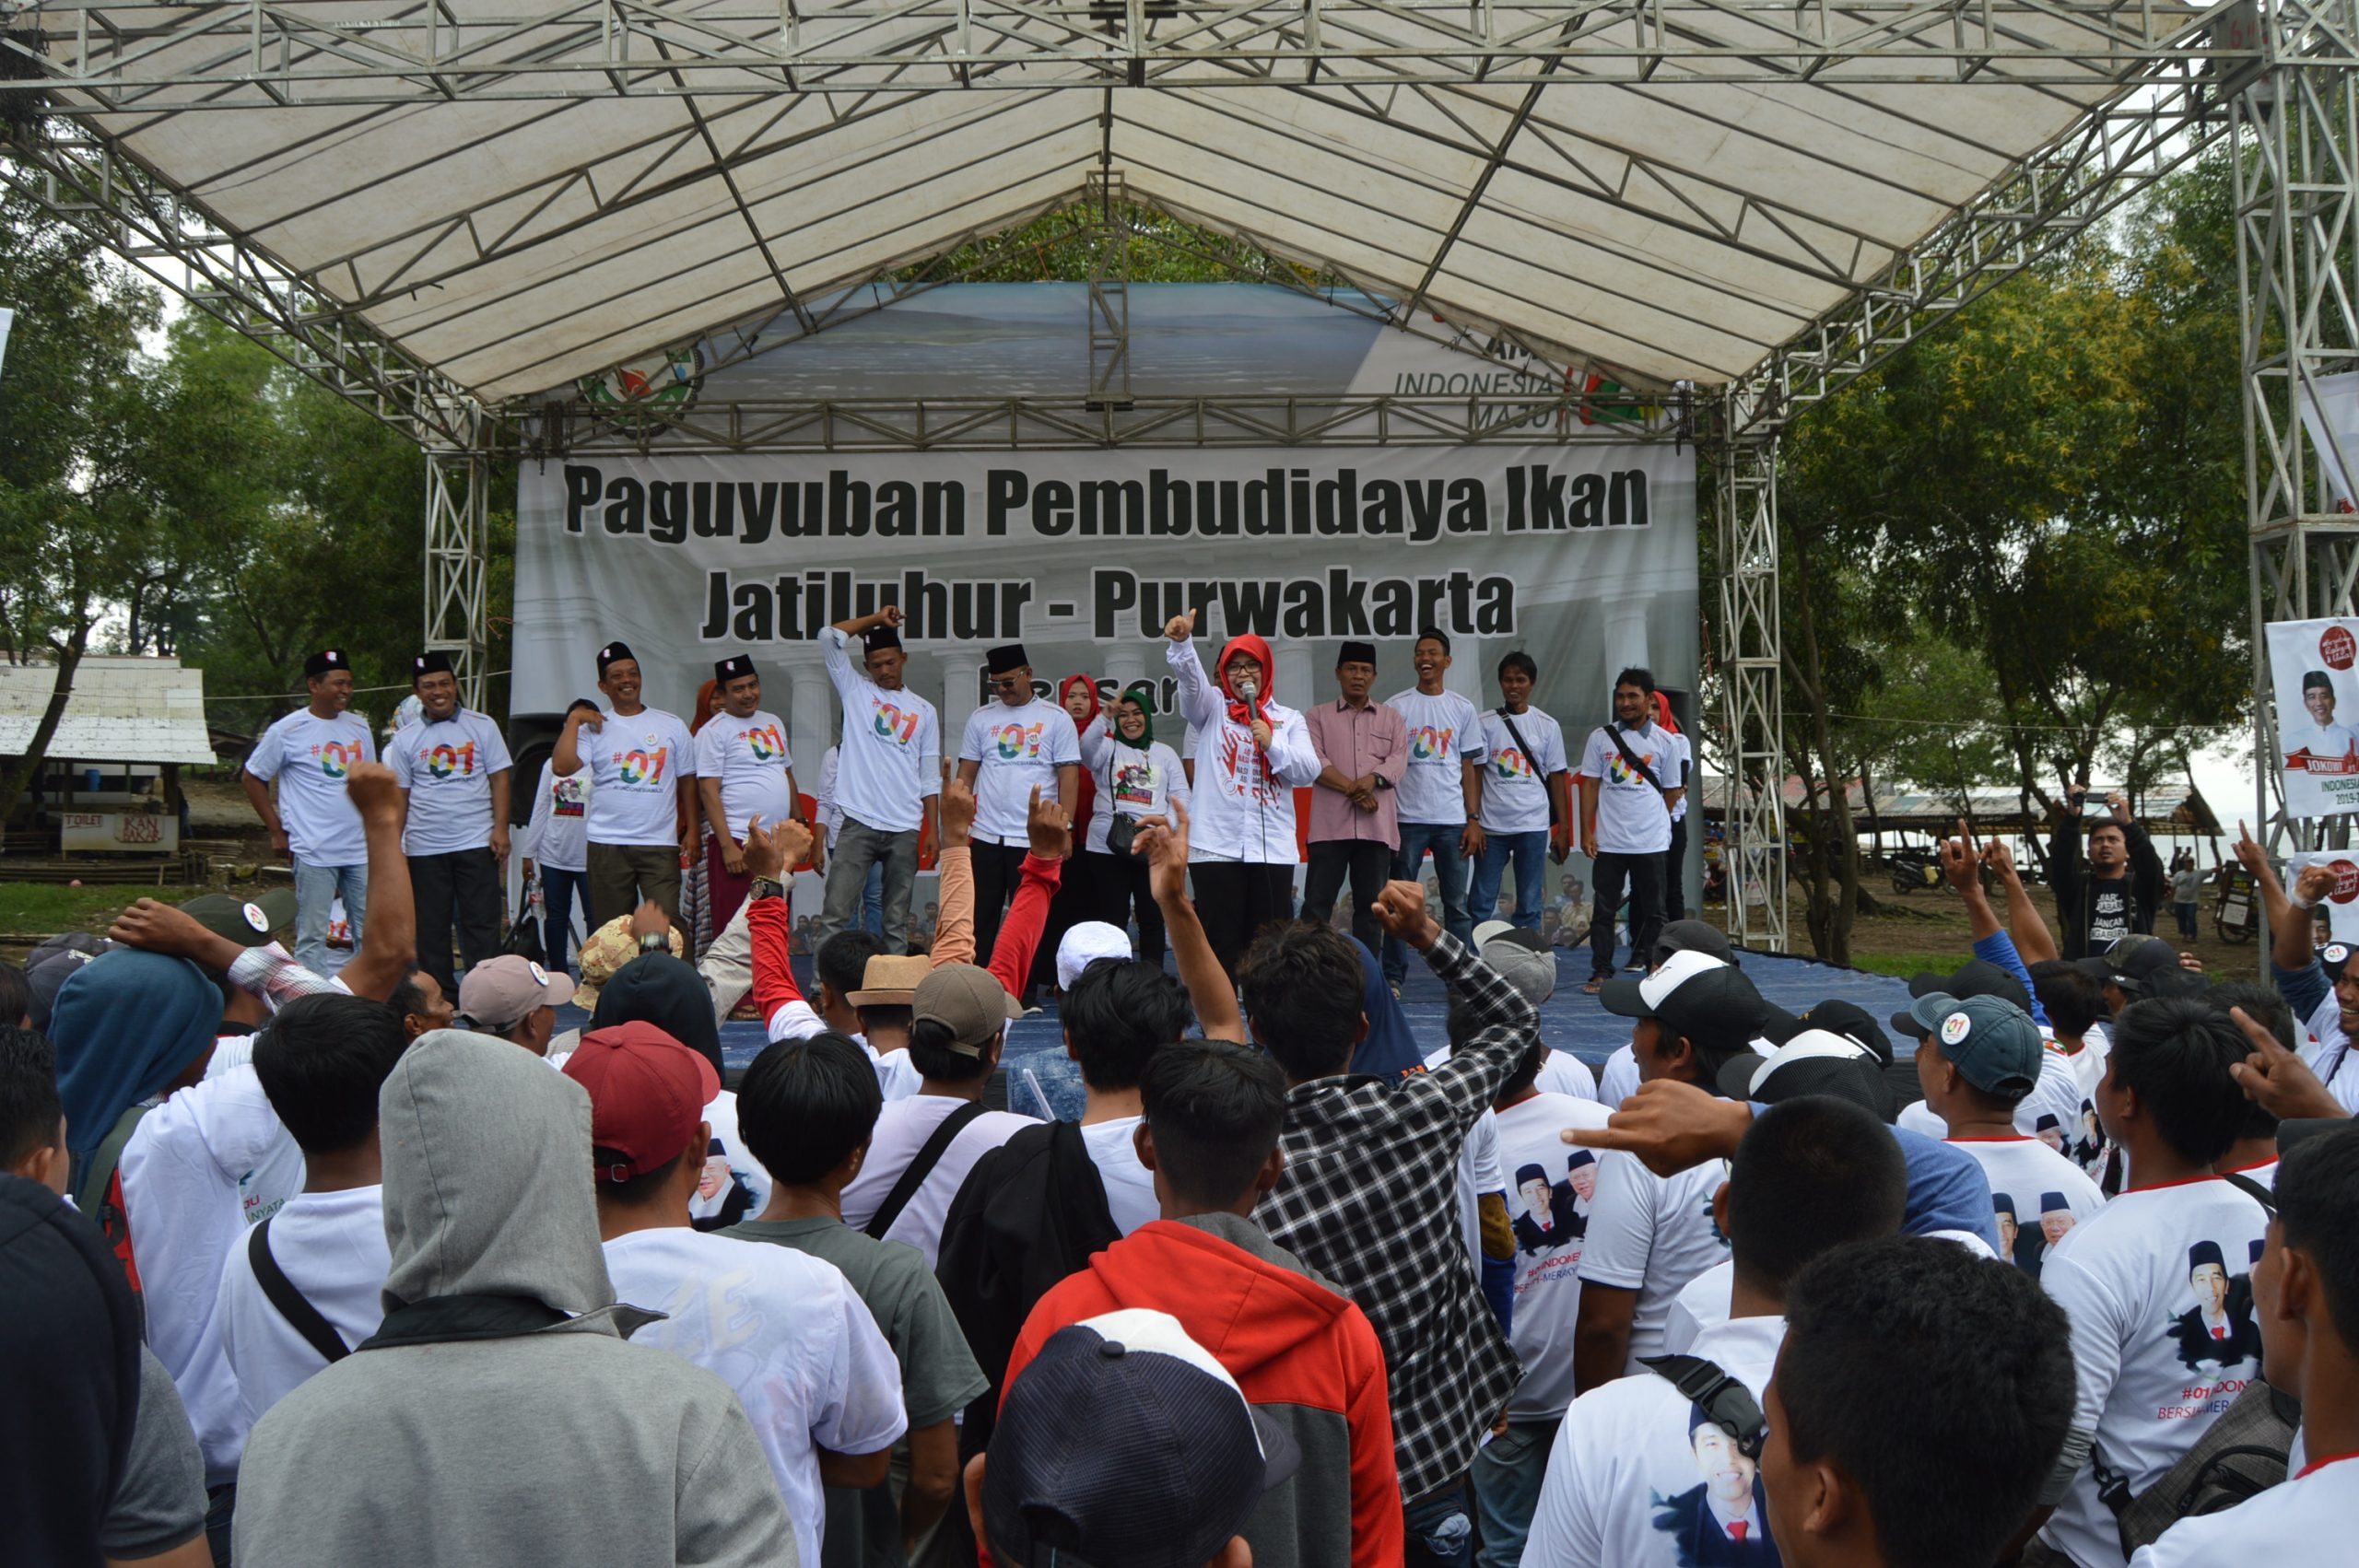 Paguyuban Pembudidaya Ikan Jatiluhur Deklarasikan Dukungan untuk Jokowi-Ma'ruf Amin